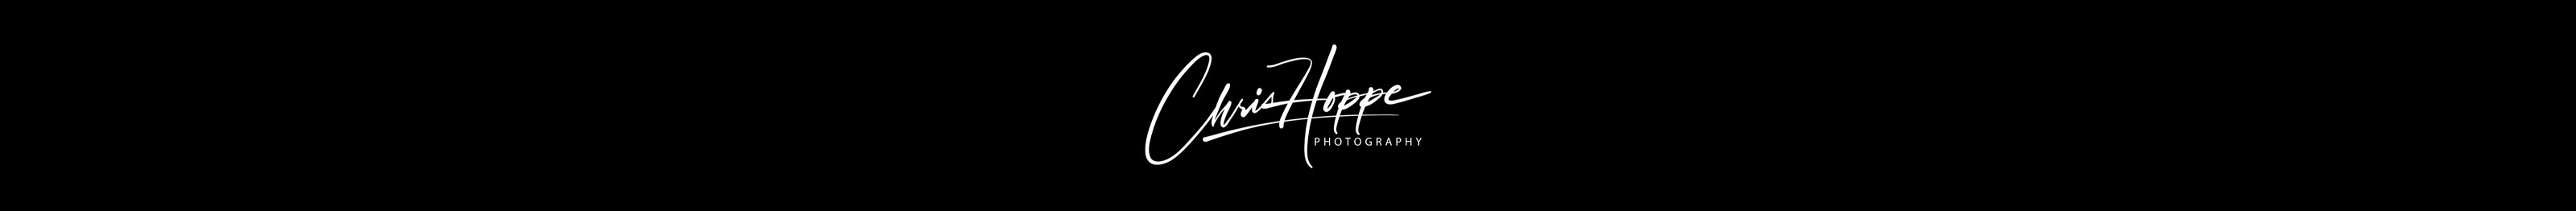 Chris Hoppe's profile banner